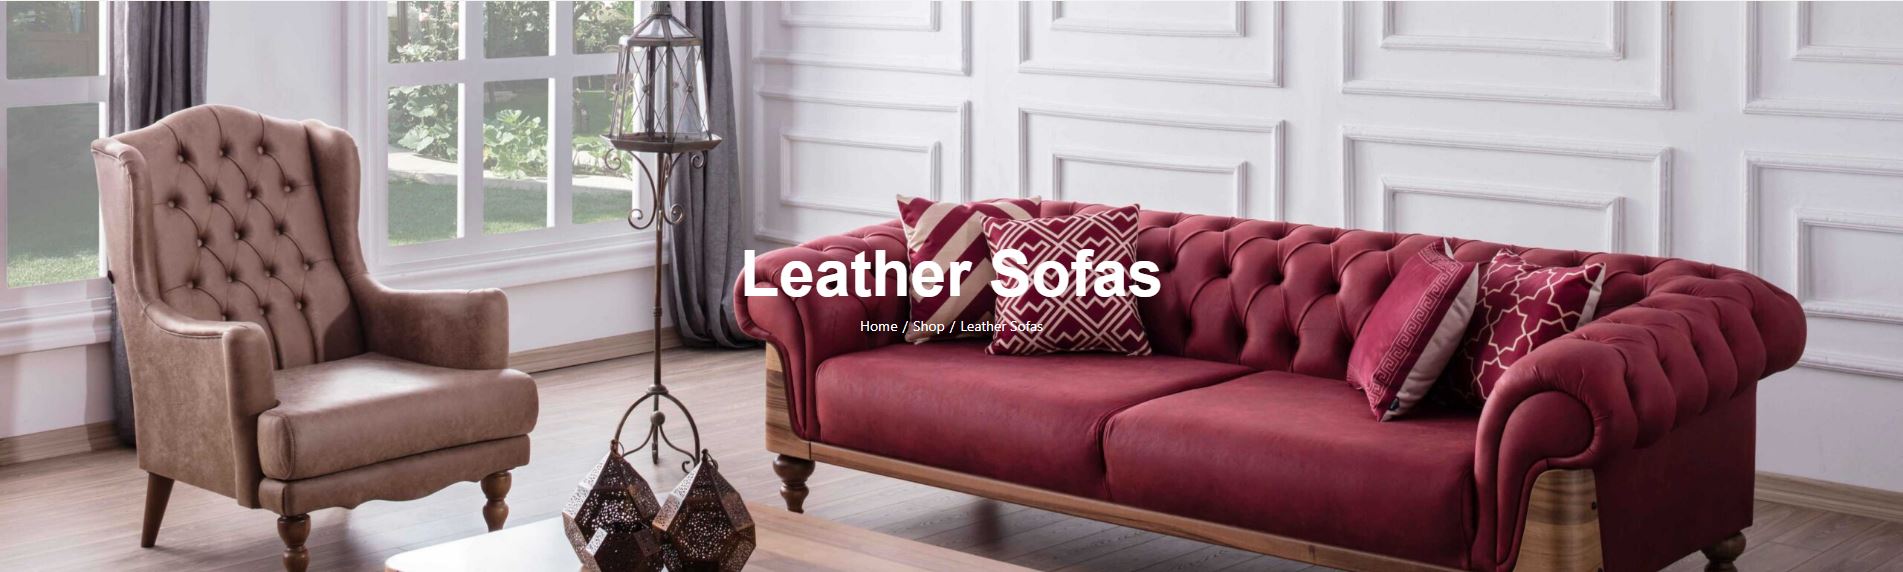 leather sofas near me